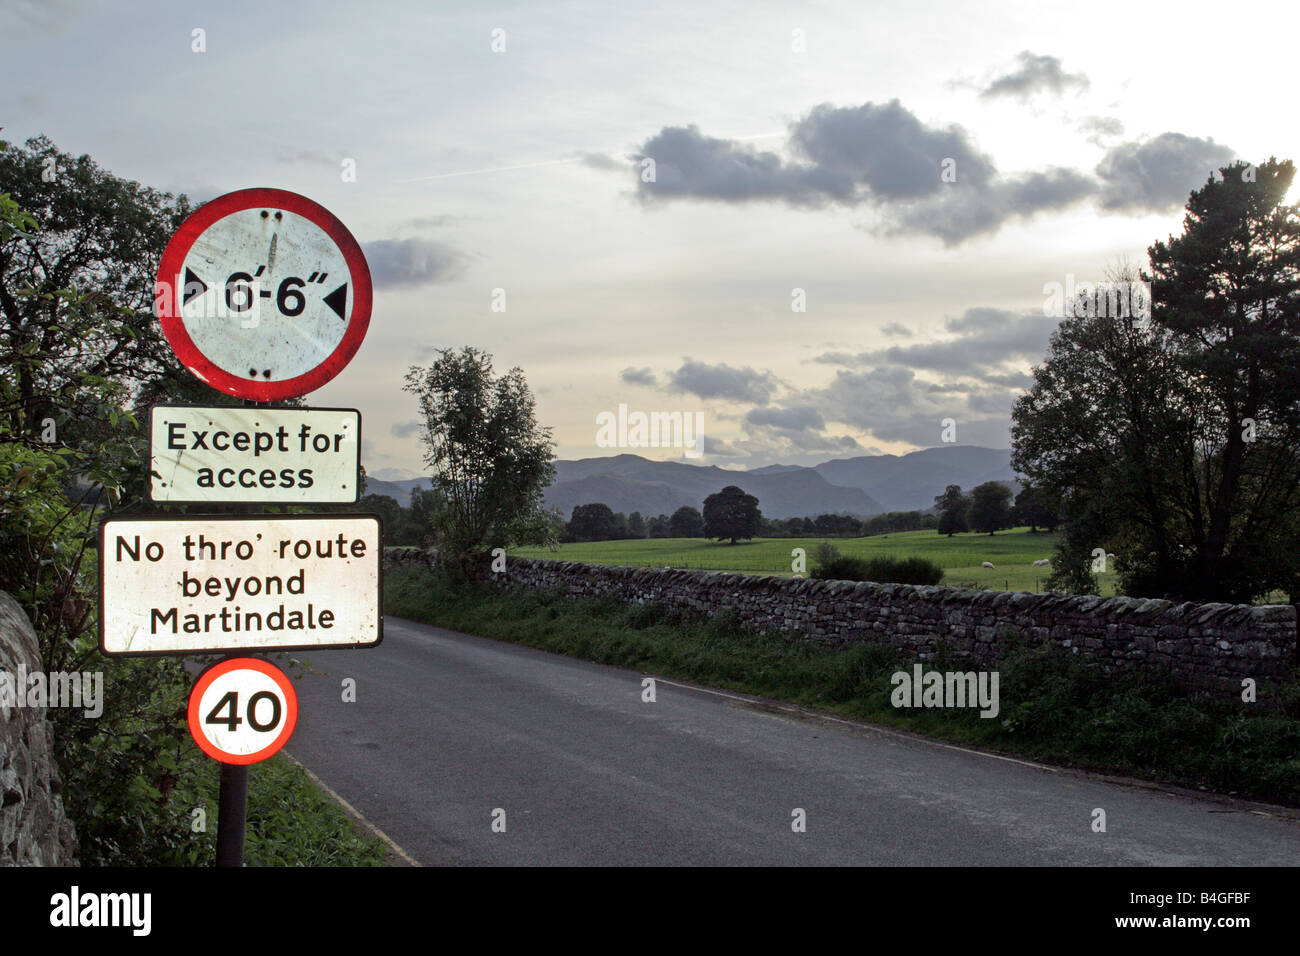 NO hay restricción de ancho de la carretera a través de la limitación de velocidad A MARTINDALE ULLSWATER distrito inglés de Lake District. Foto de stock